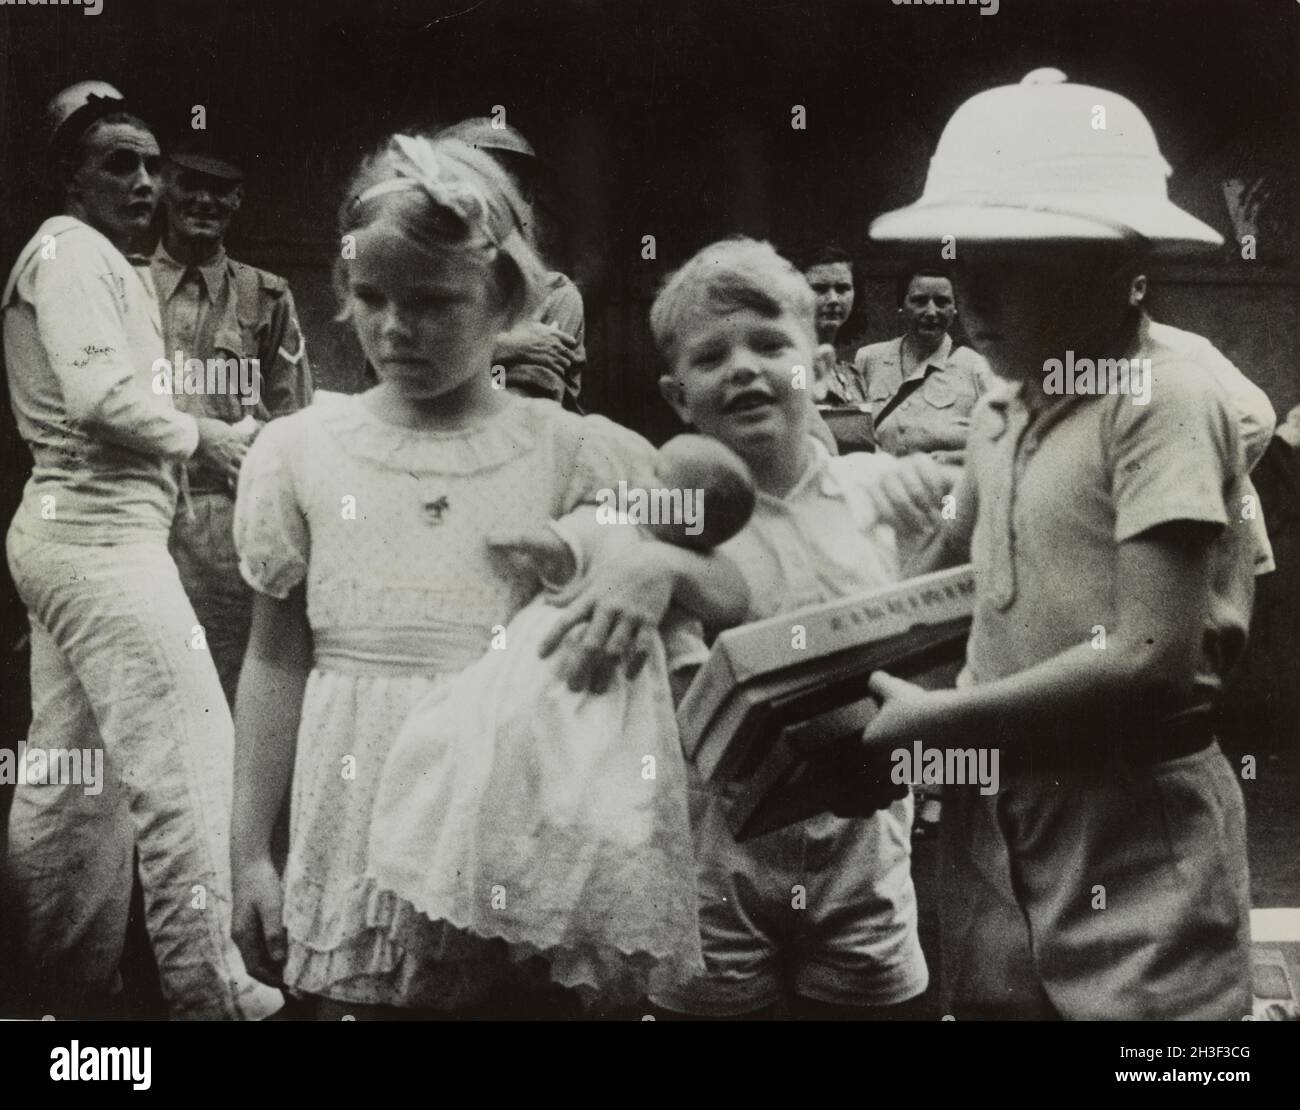 Ein Vintage-Foto um den Februar 1942, das britische Kinder zeigt, die vor der japanischen Invasion von Malaya und dem Fall von Singapur per Schiff aus Singapur evakuiert wurden. Britische Matrosen und Soldaten erscheinen im Hintergrund. Stockfoto